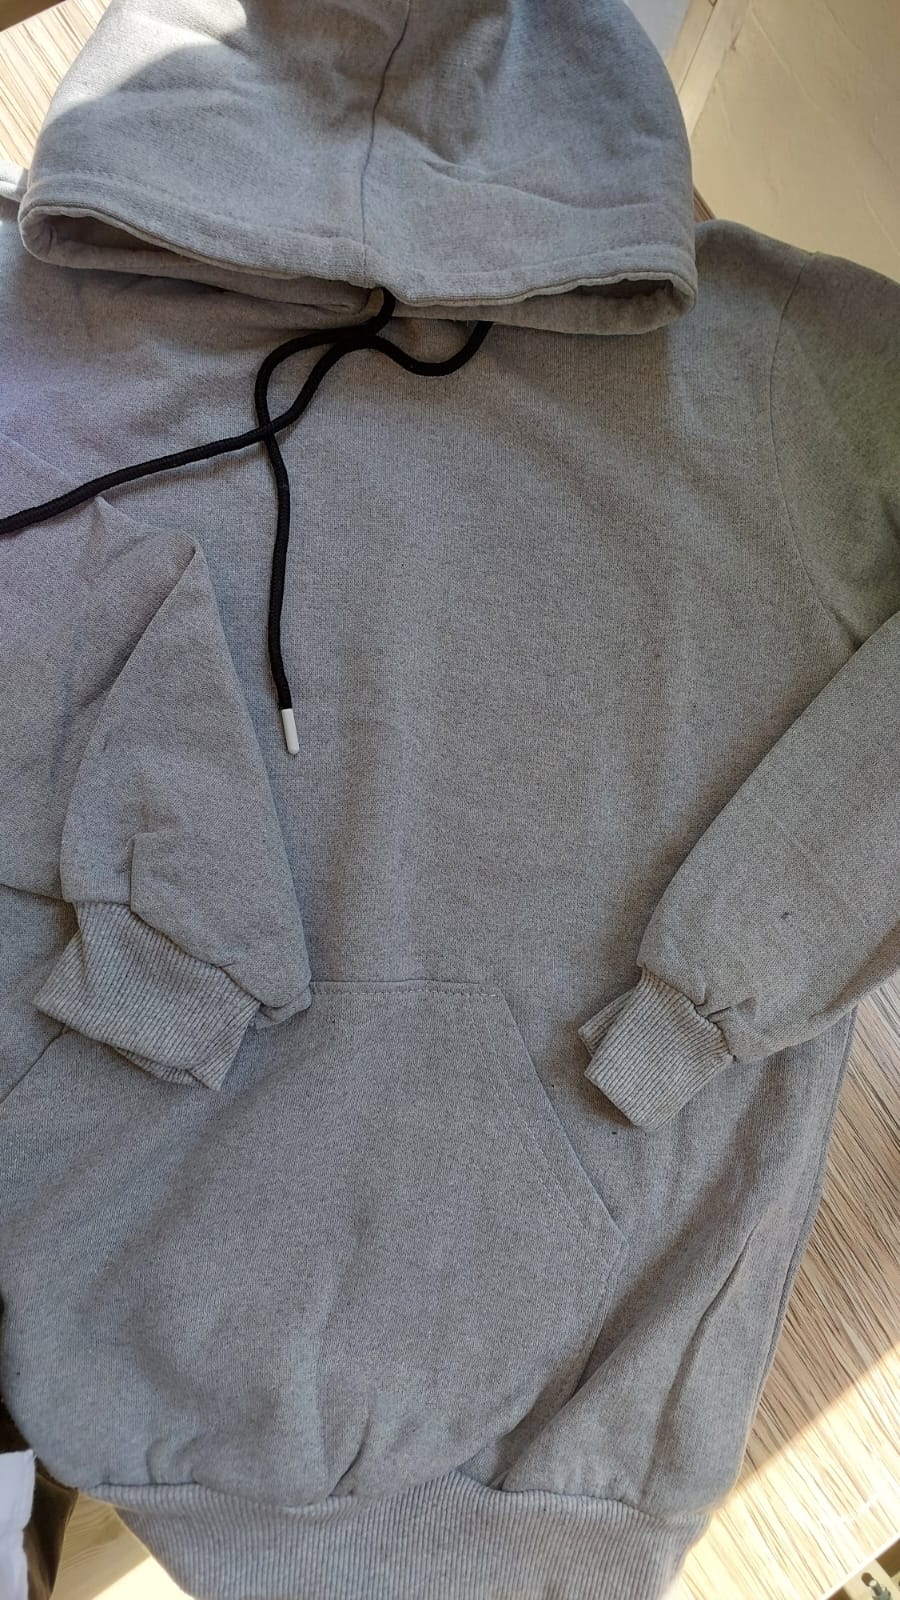 sweatshirt tasarla uygun fiyat yuvarlak yaka iki iplik 12